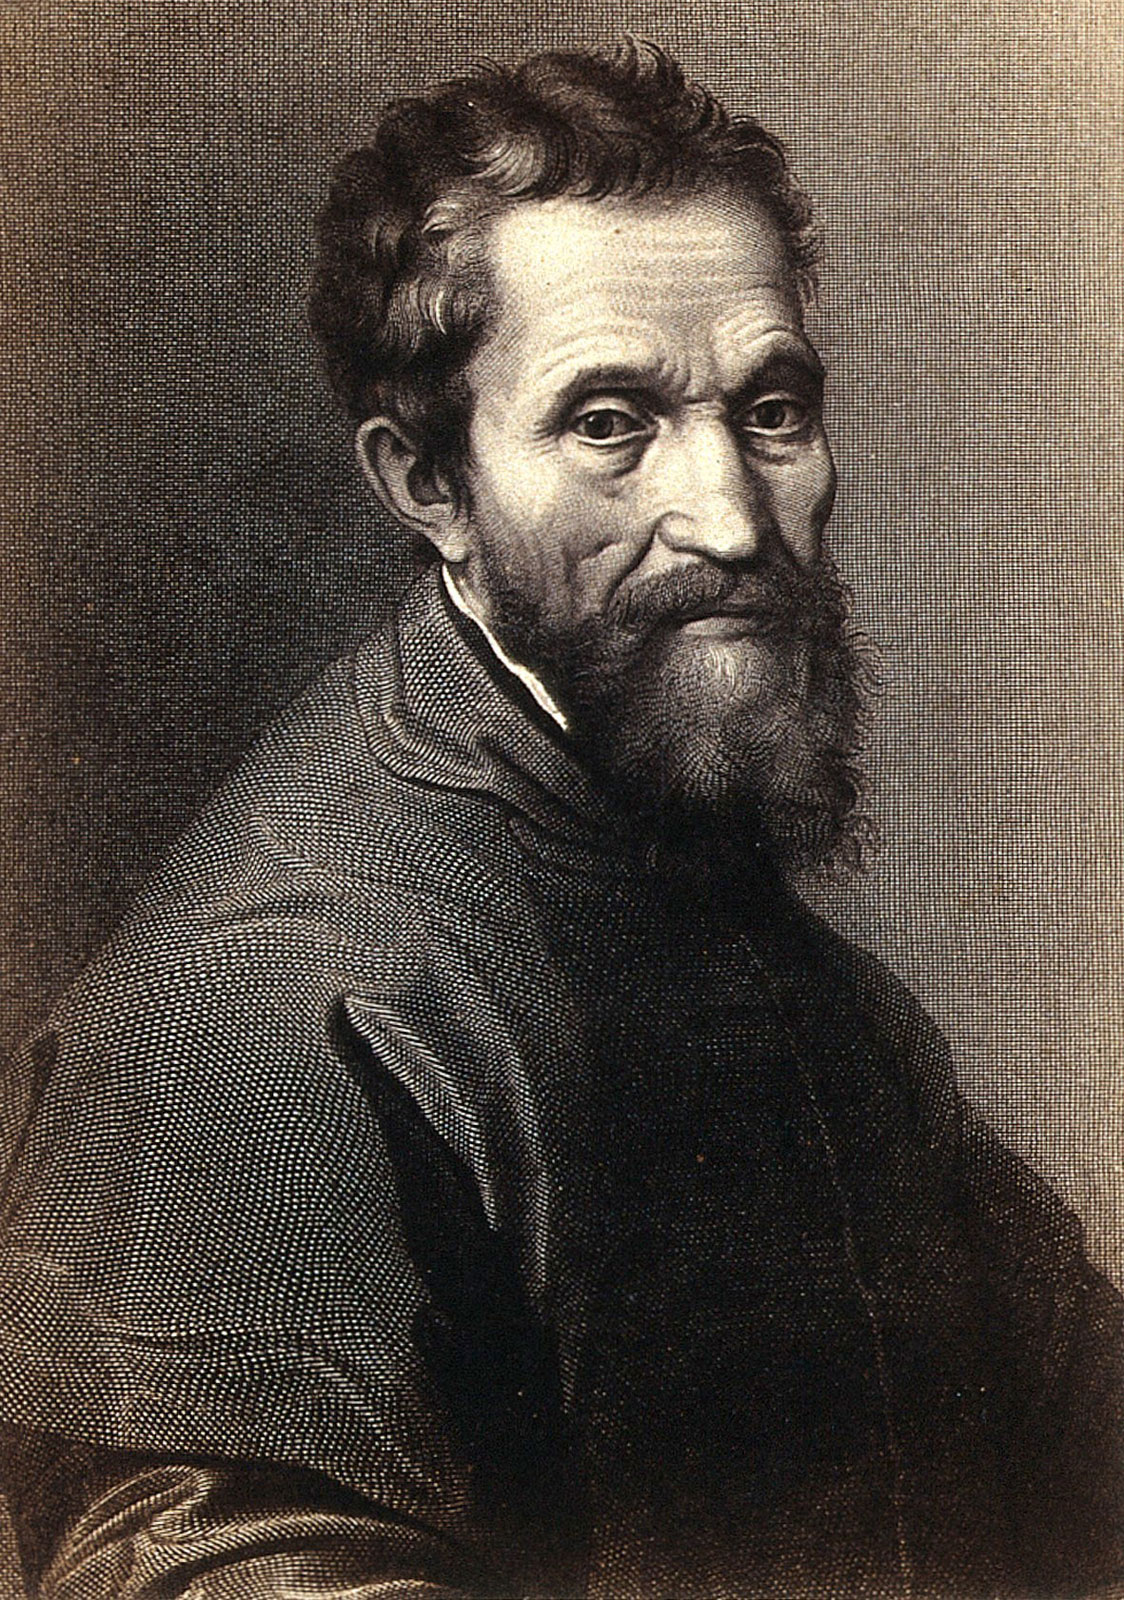 PORTRET: Michelangelo Buonarroti – un geniu al Renaşterii italiene, un  simbol al artei universale | Agenția de presă Rador